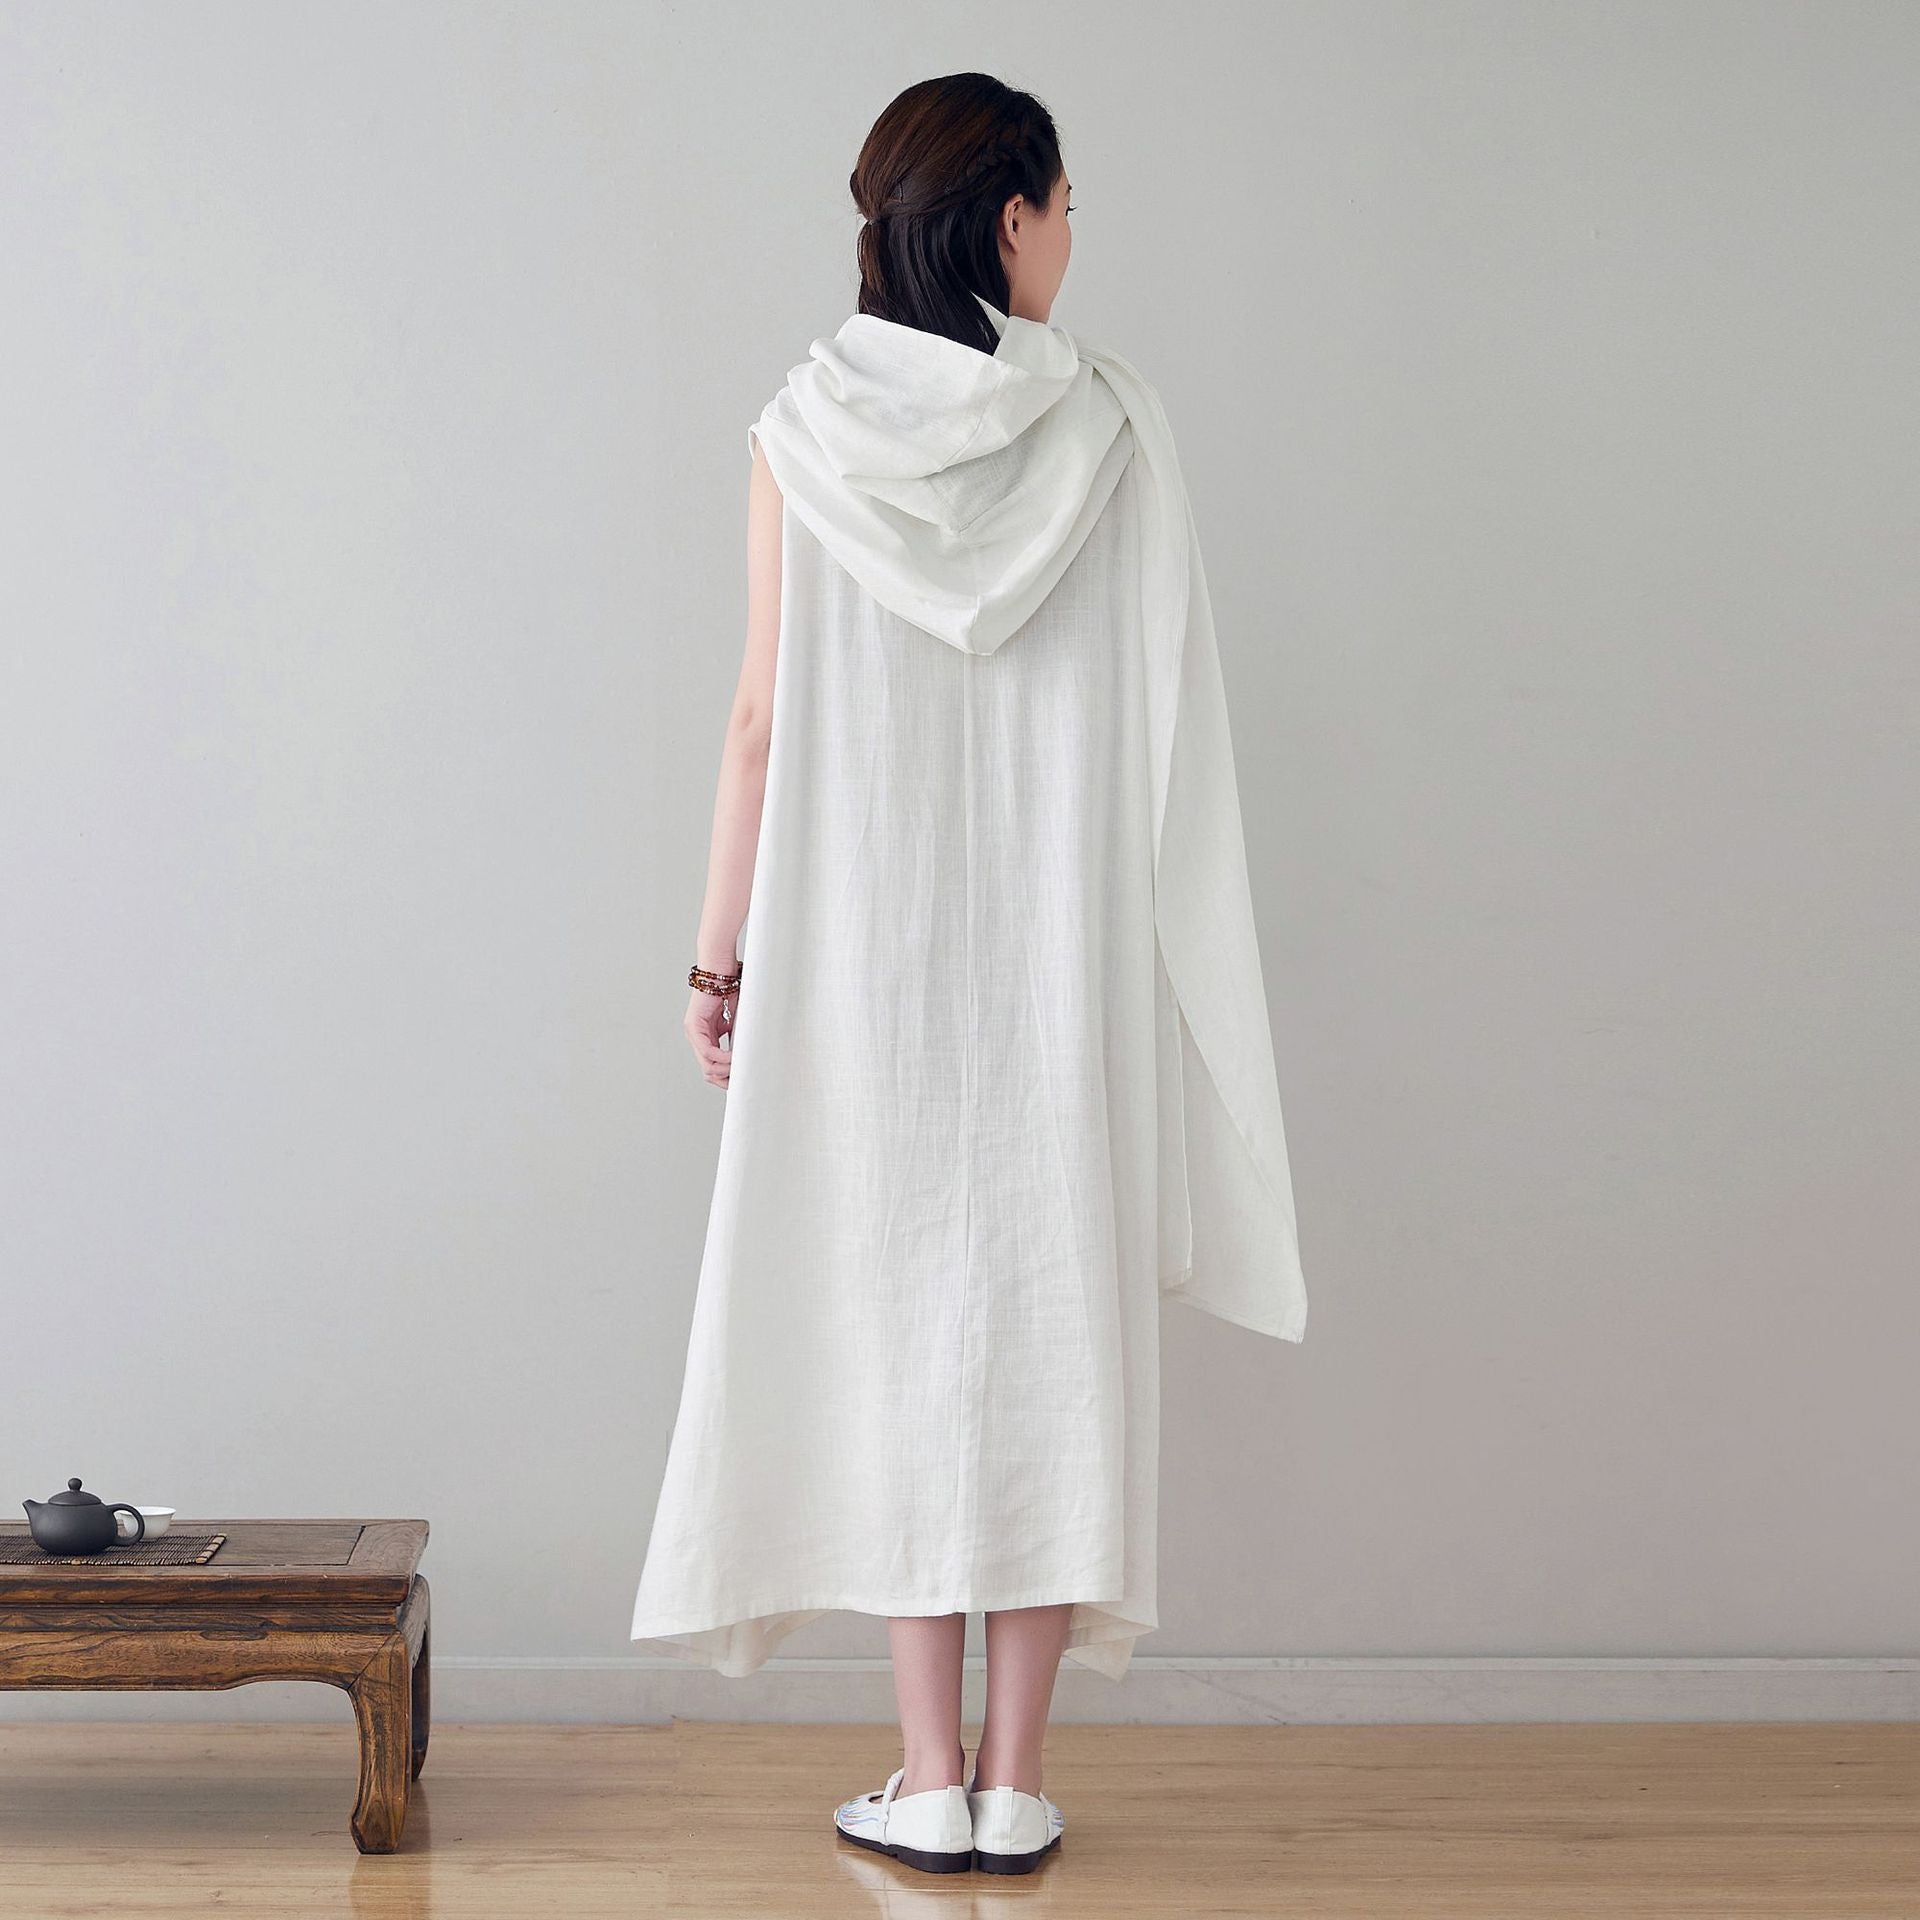 Leinen-Baumwollkleid mit Kapuze, Leinen-Hoodie-Kleid LIZIQI inspiriert 220521c